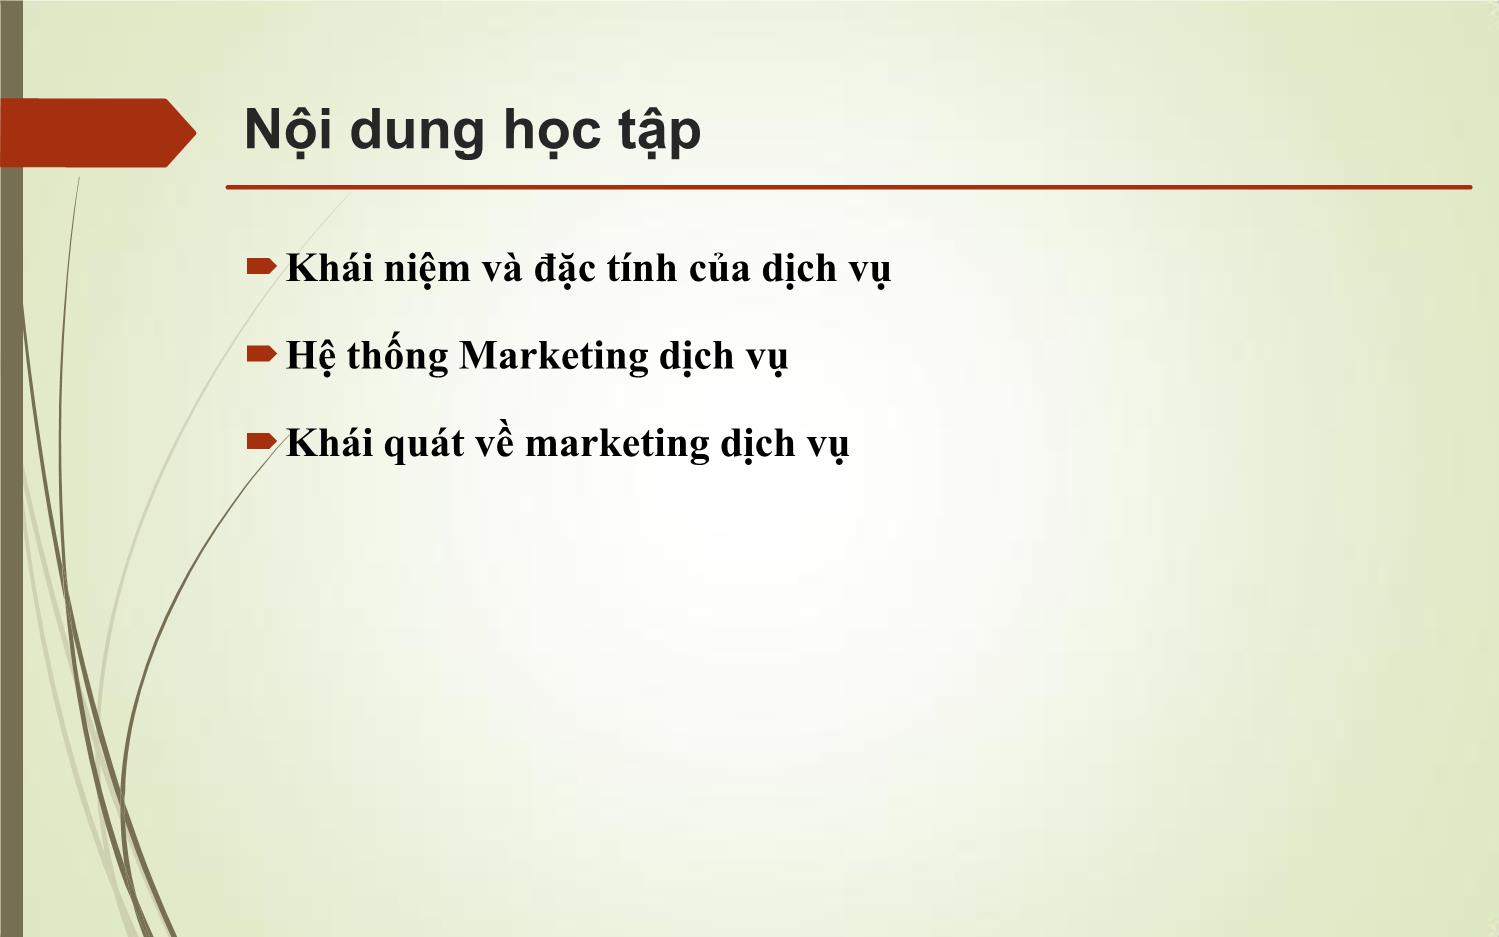 Bài giảng Marketing dịch vụ trang 7